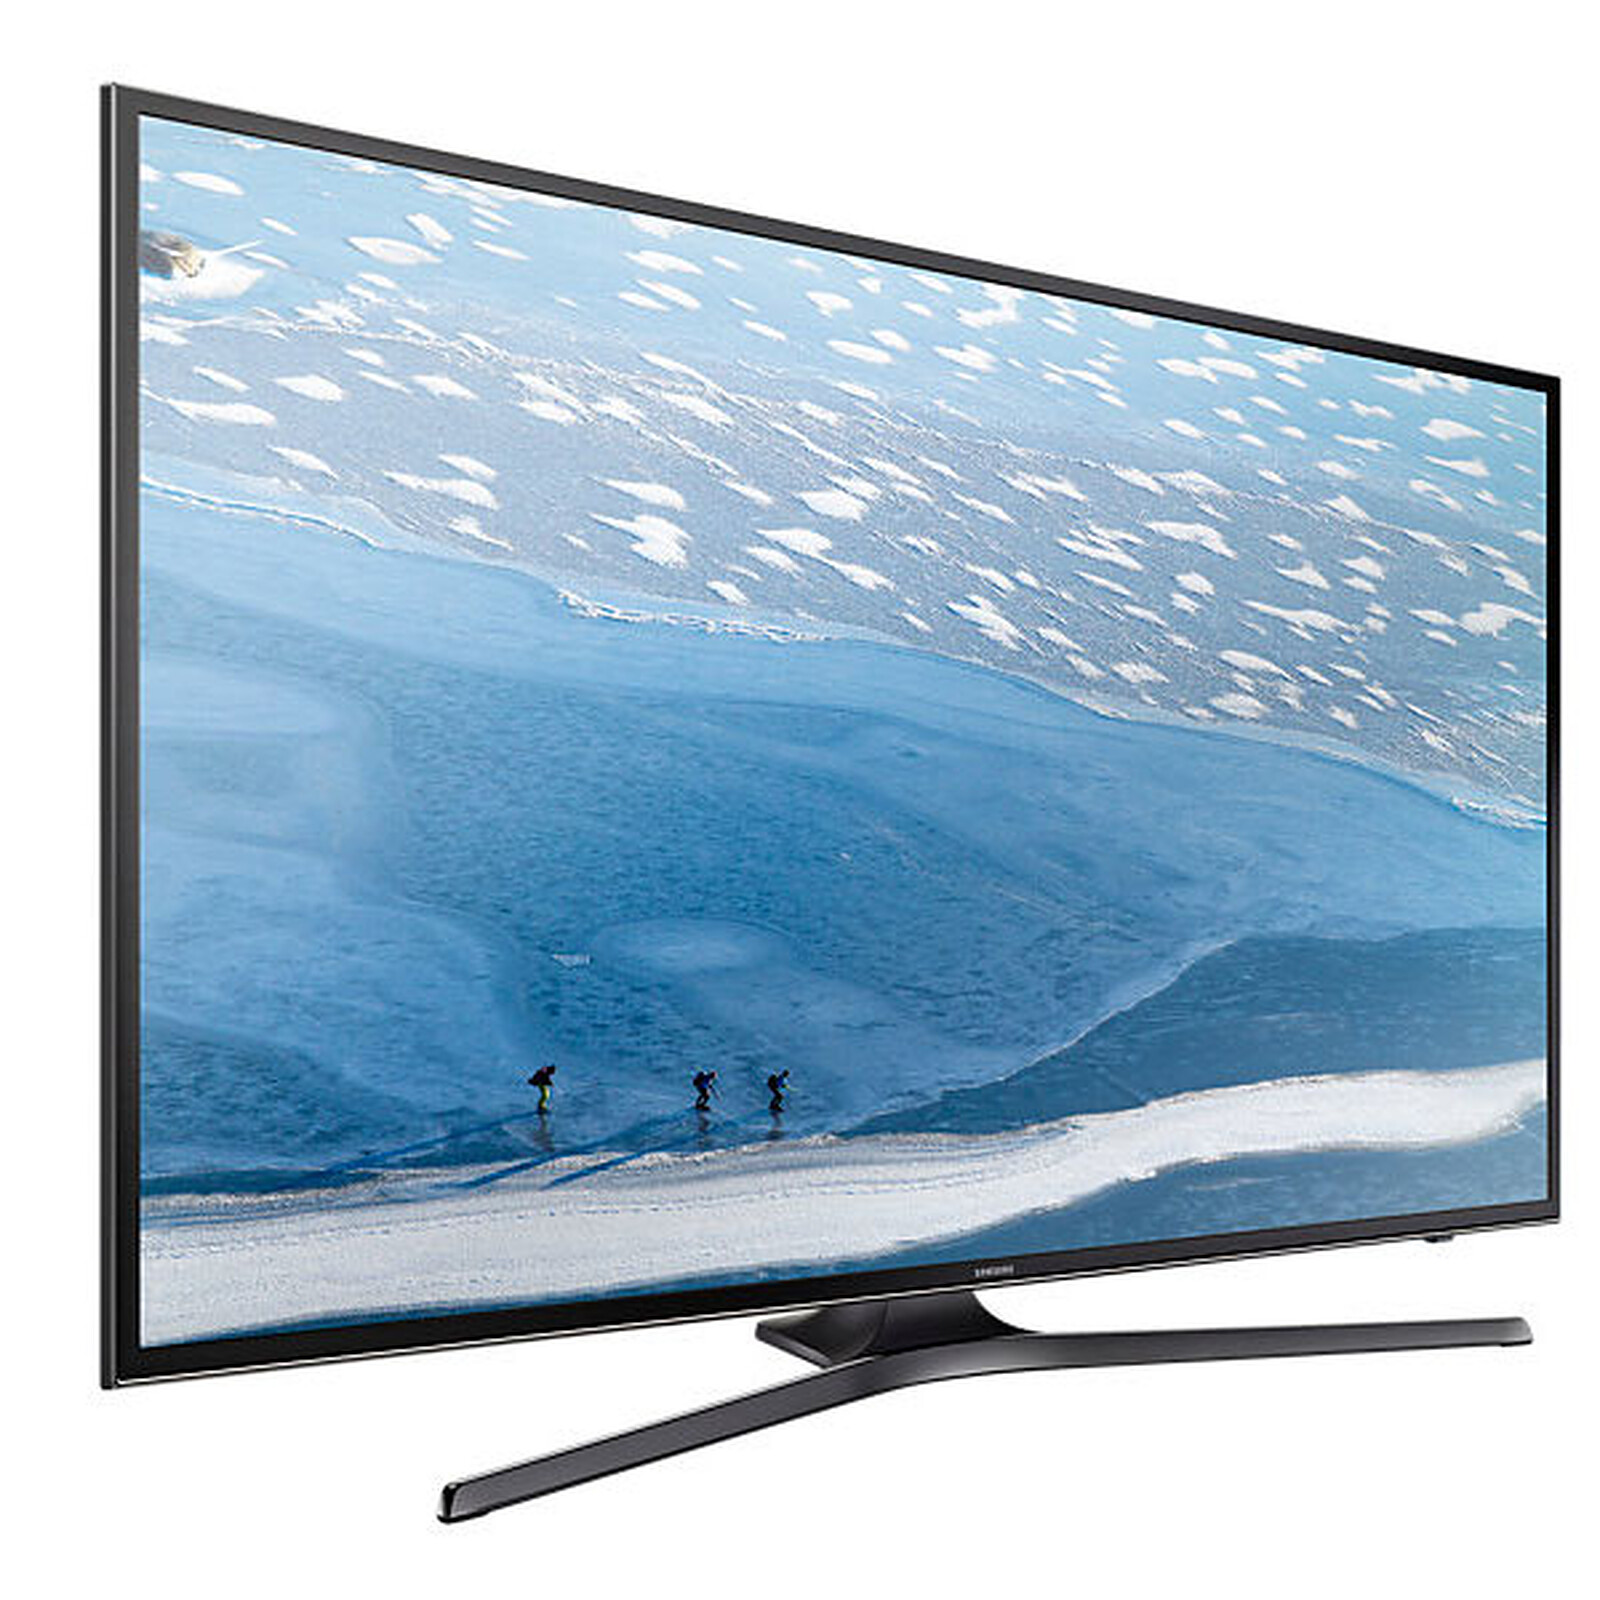 Samsung UE40KU6000 - TV - Garantie 3 ans LDLC